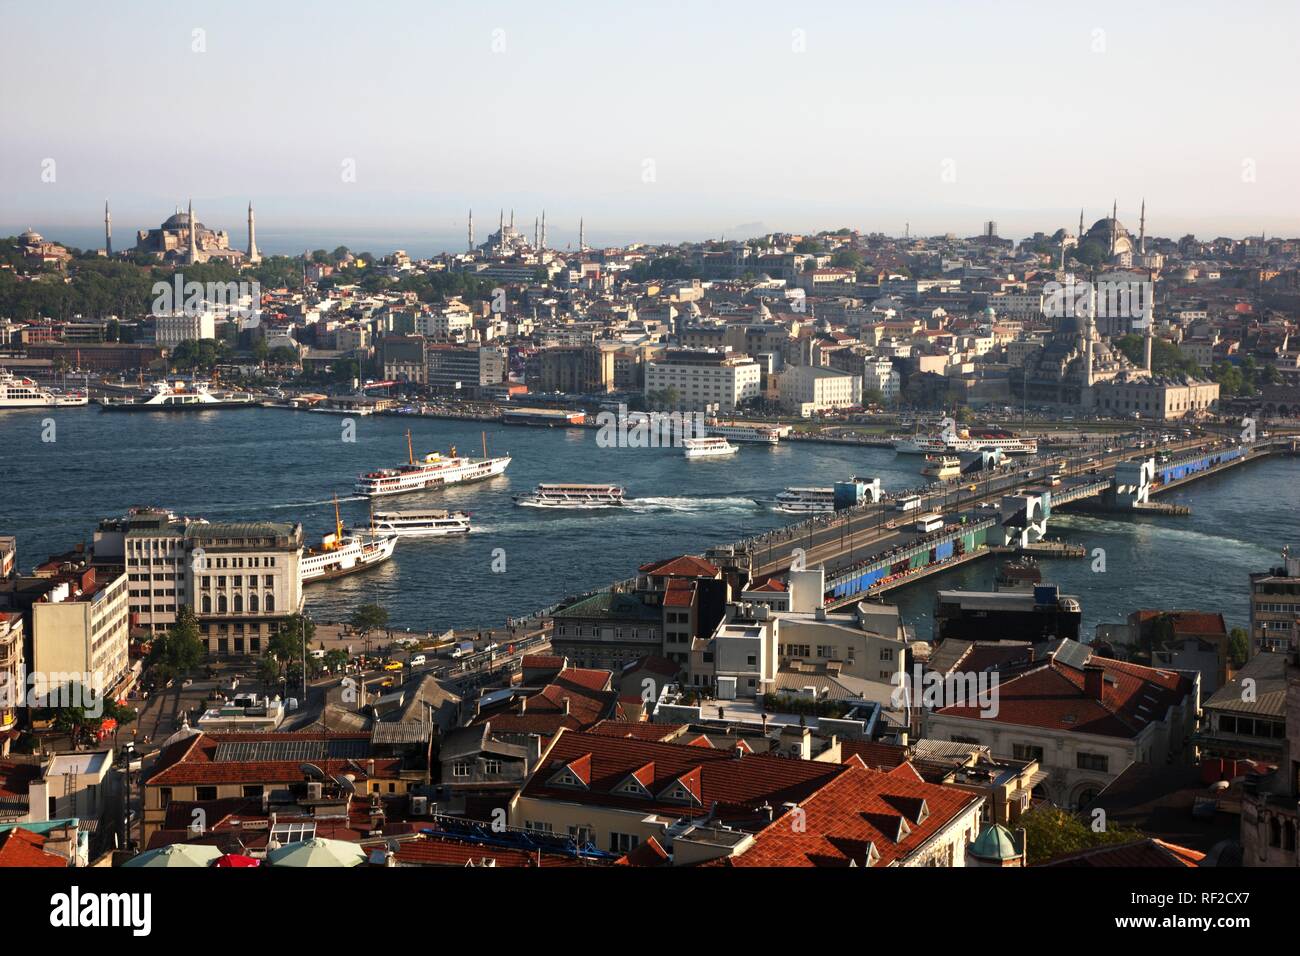 Vista sul quartiere Eminoenue, con il Galata Bridge spanning the Golden Horn, con moschee in distanza, Istanbul Foto Stock